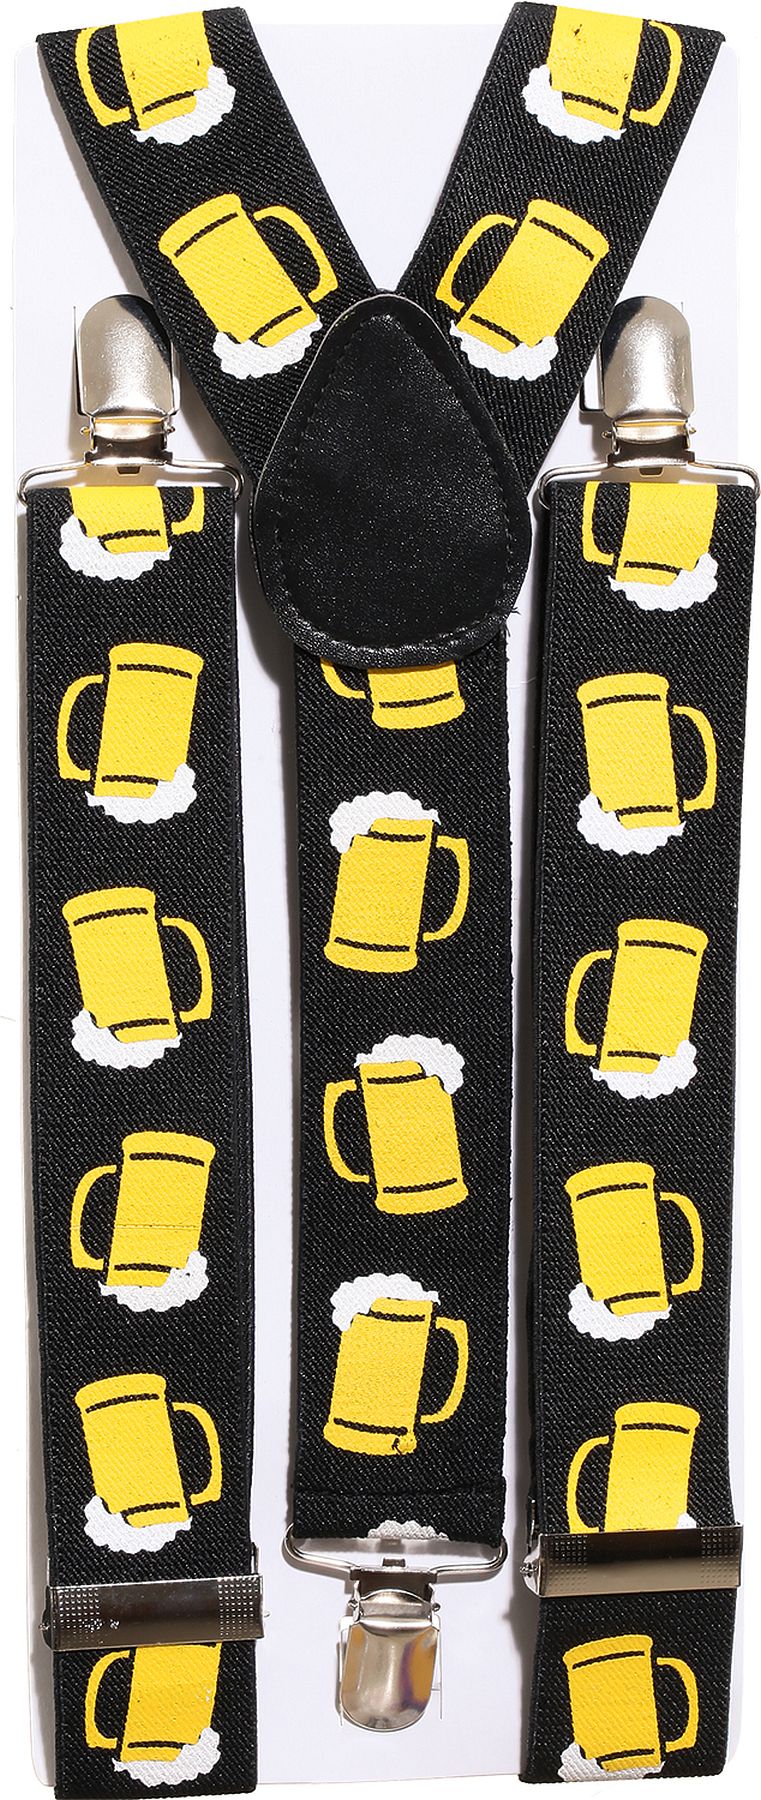 Suspenders, beer mug